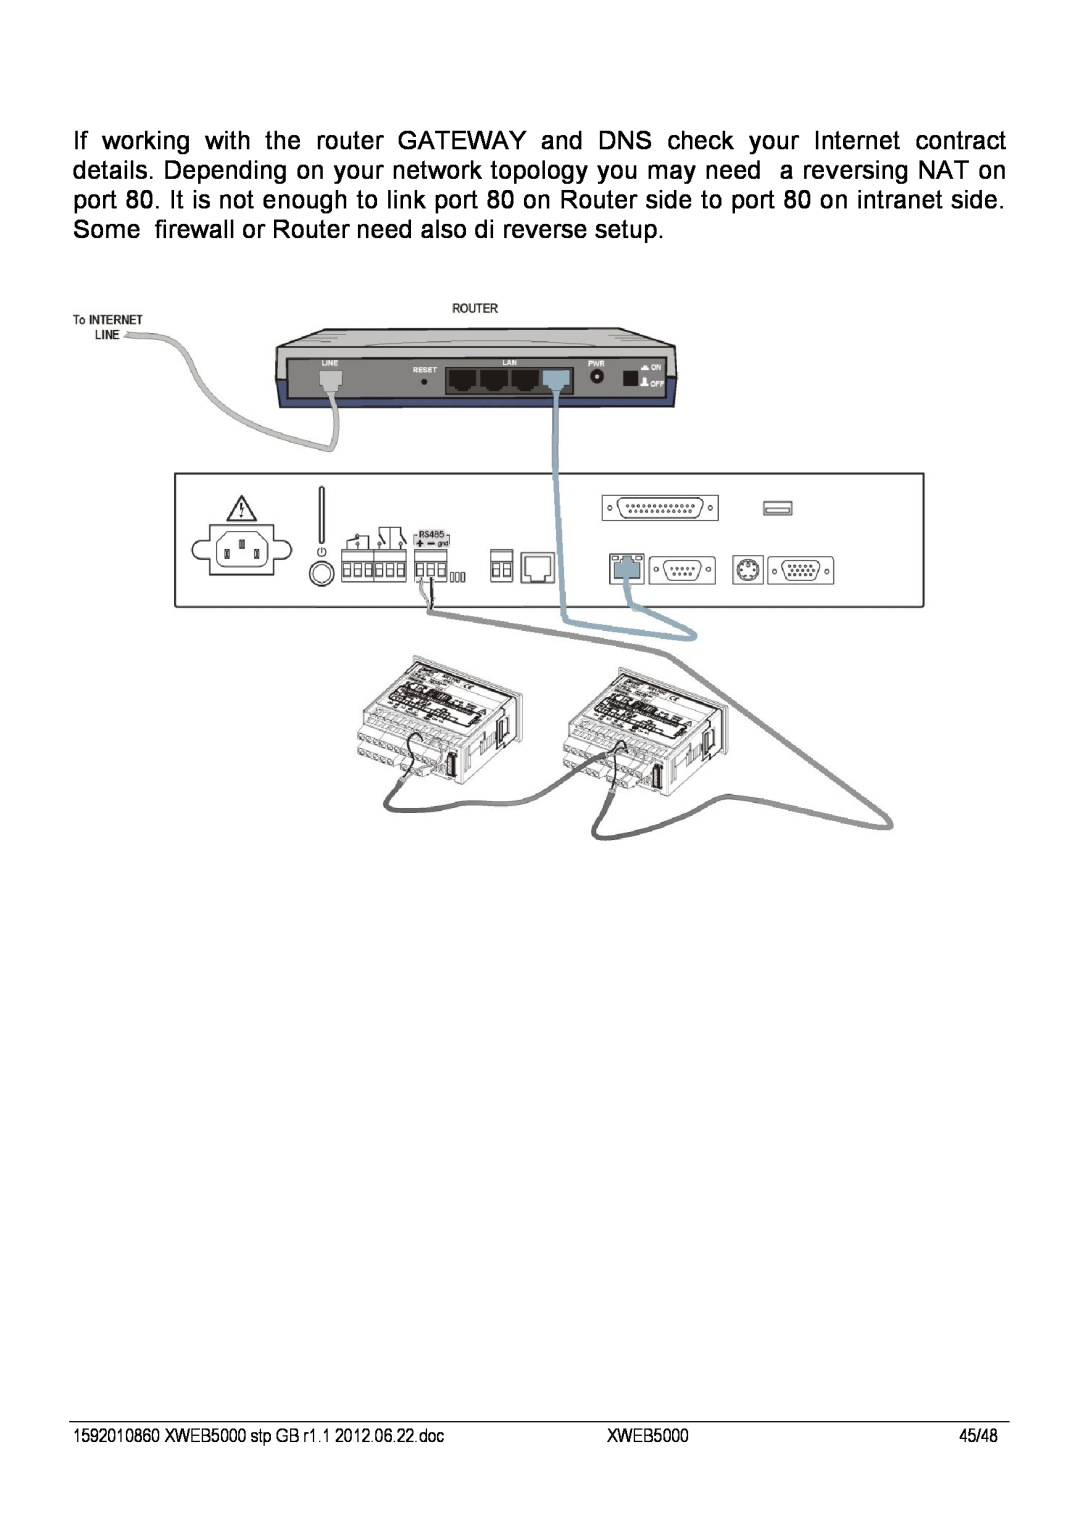 Emerson manual XWEB5000 stp GB r1.1 2012.06.22.doc, 45/48 